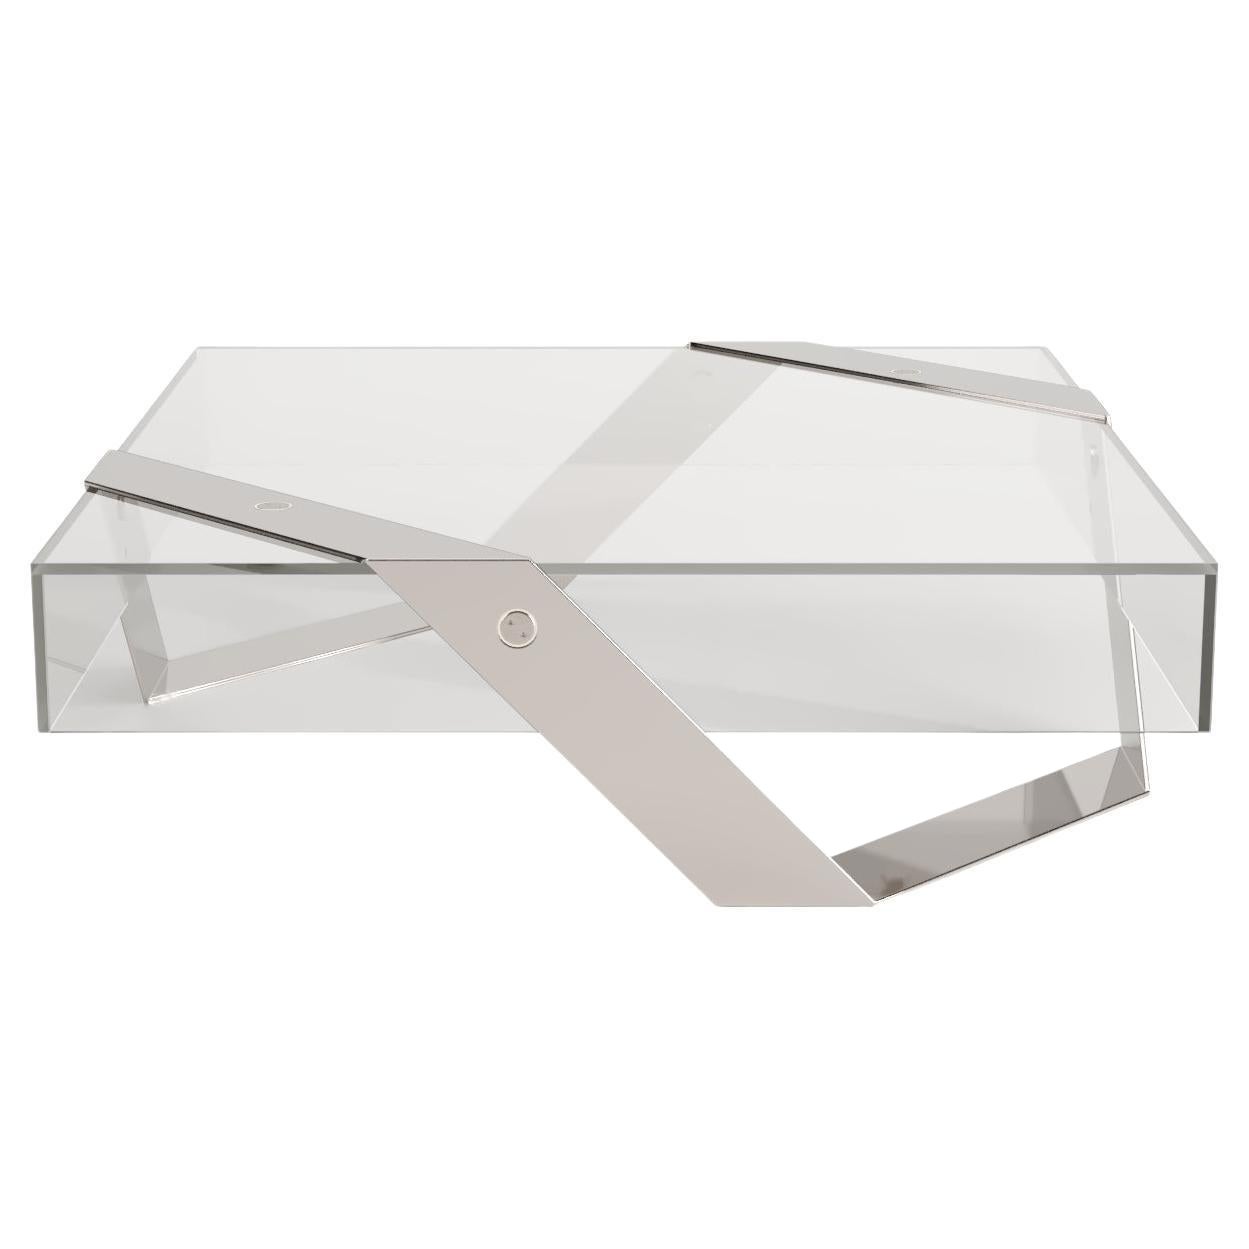 Tavolino moderno minimalista quadrato centrale in vetro e acciaio inossidabile lucido